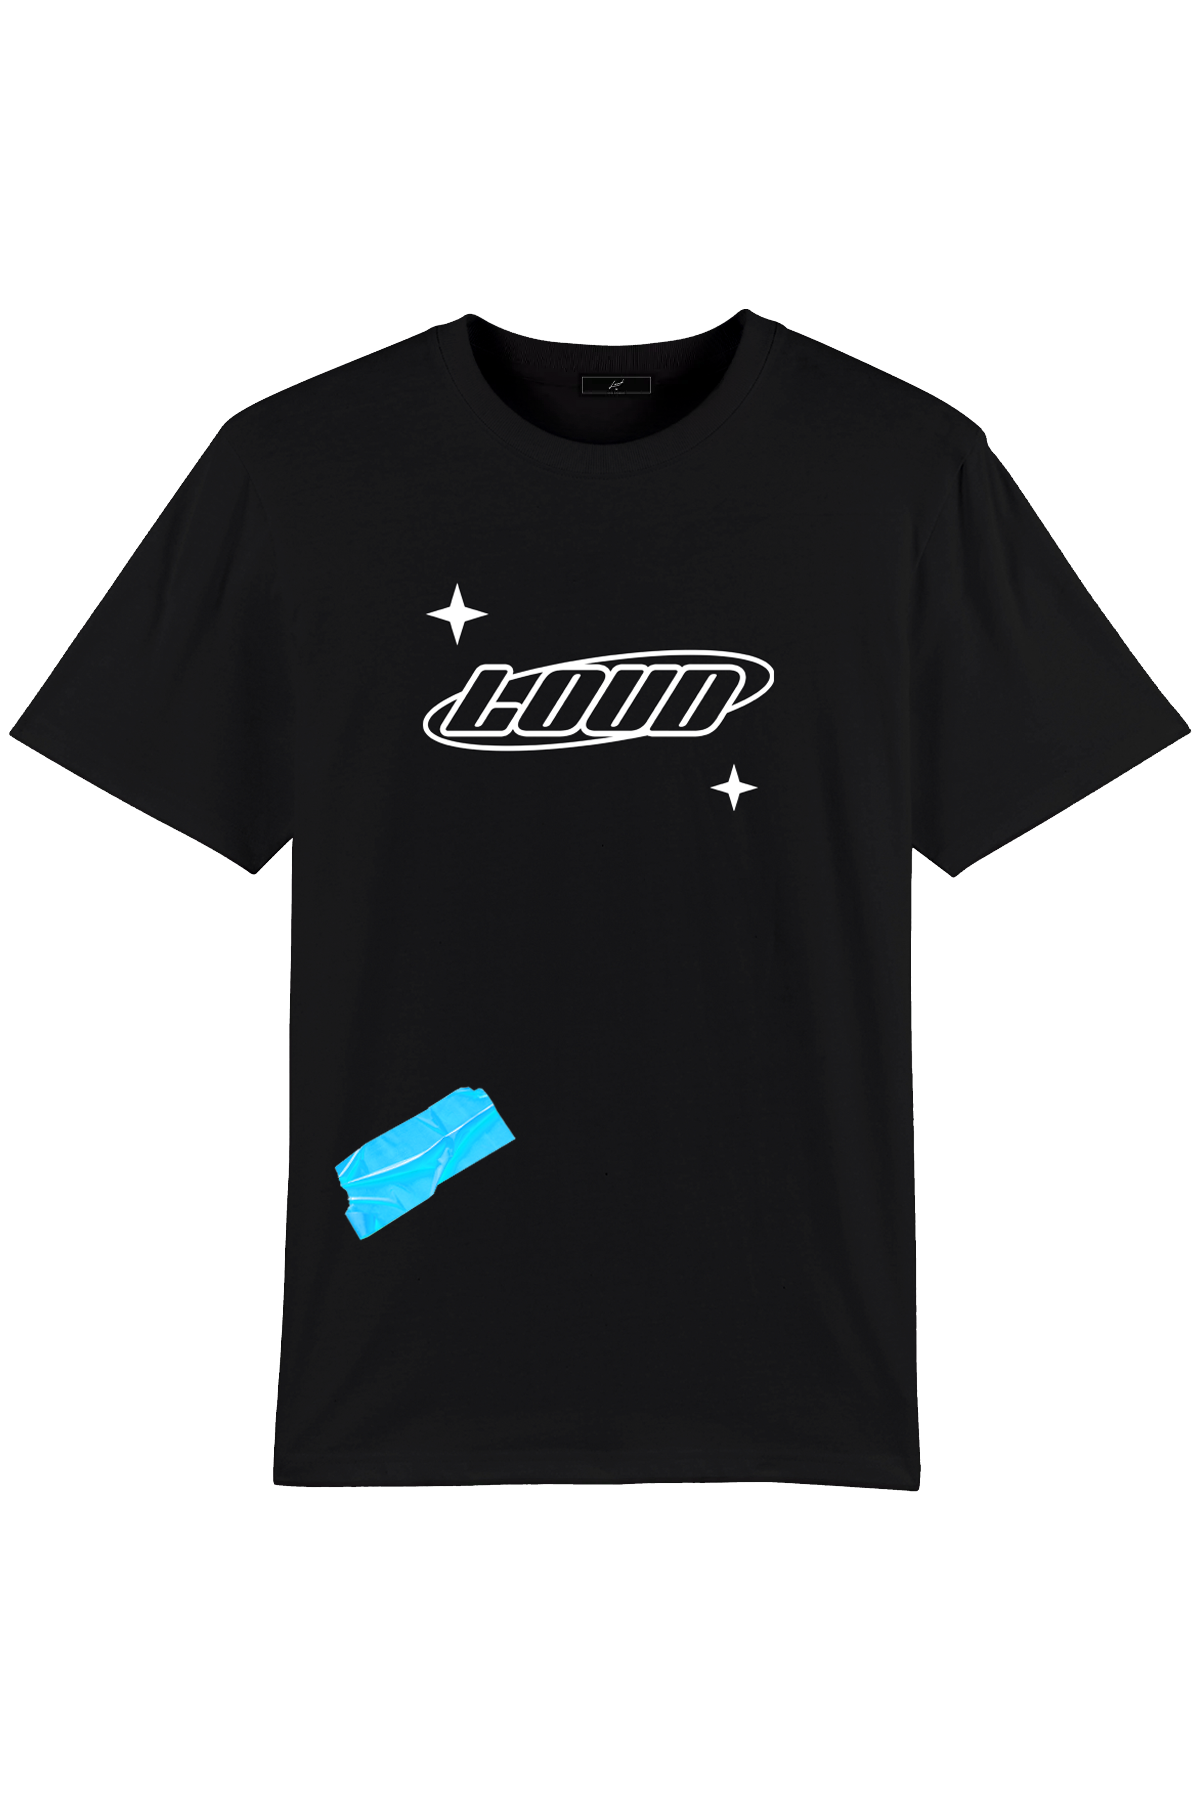 Loud Logo Blue Tape - Black T-Shirt